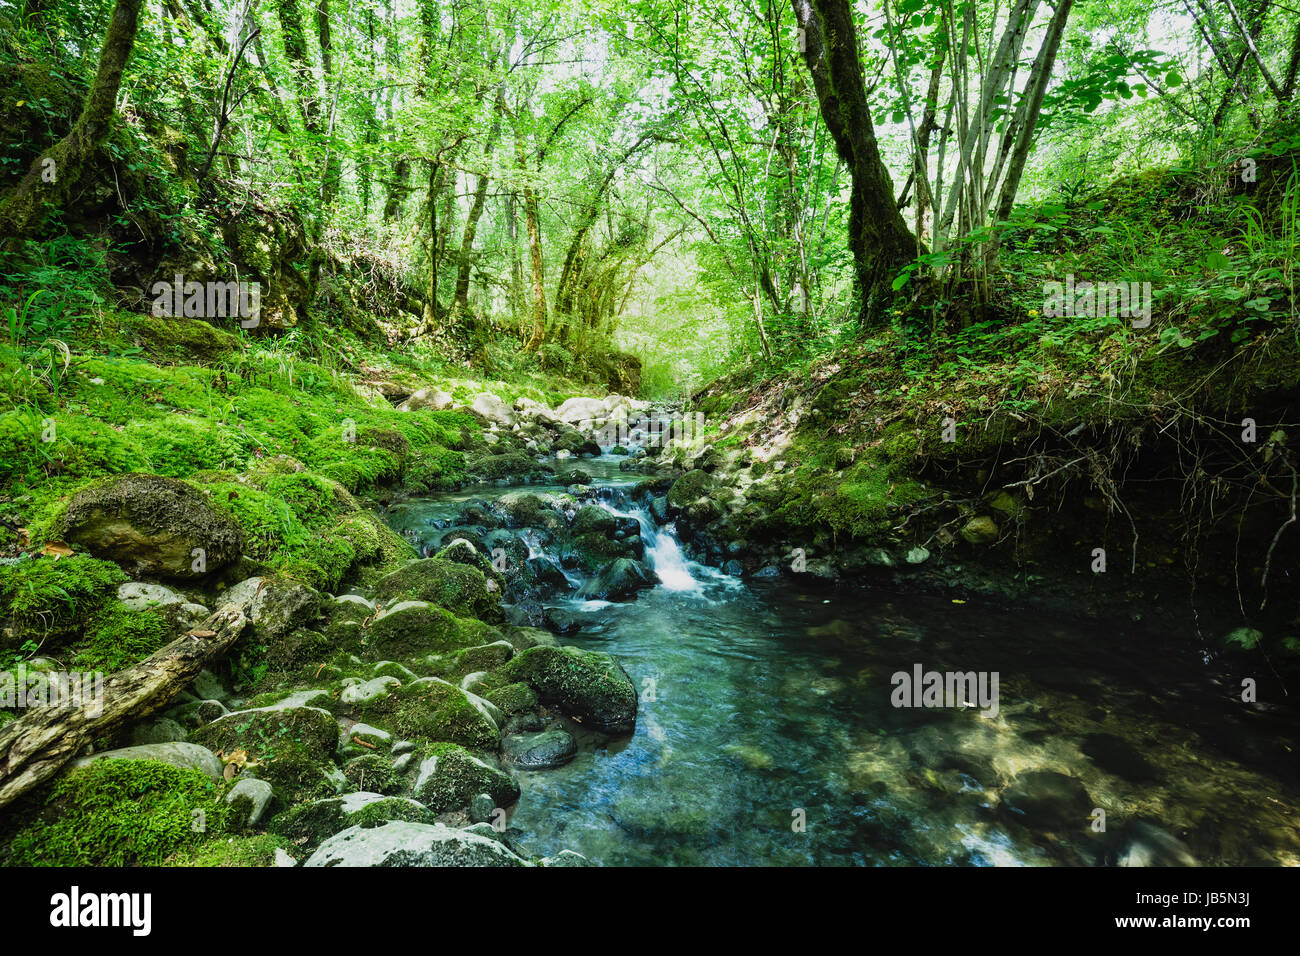 Piccolo ruscello, fiume che scorre attraverso una foresta durante l'estate. vivaci colori verde e blu Foto Stock